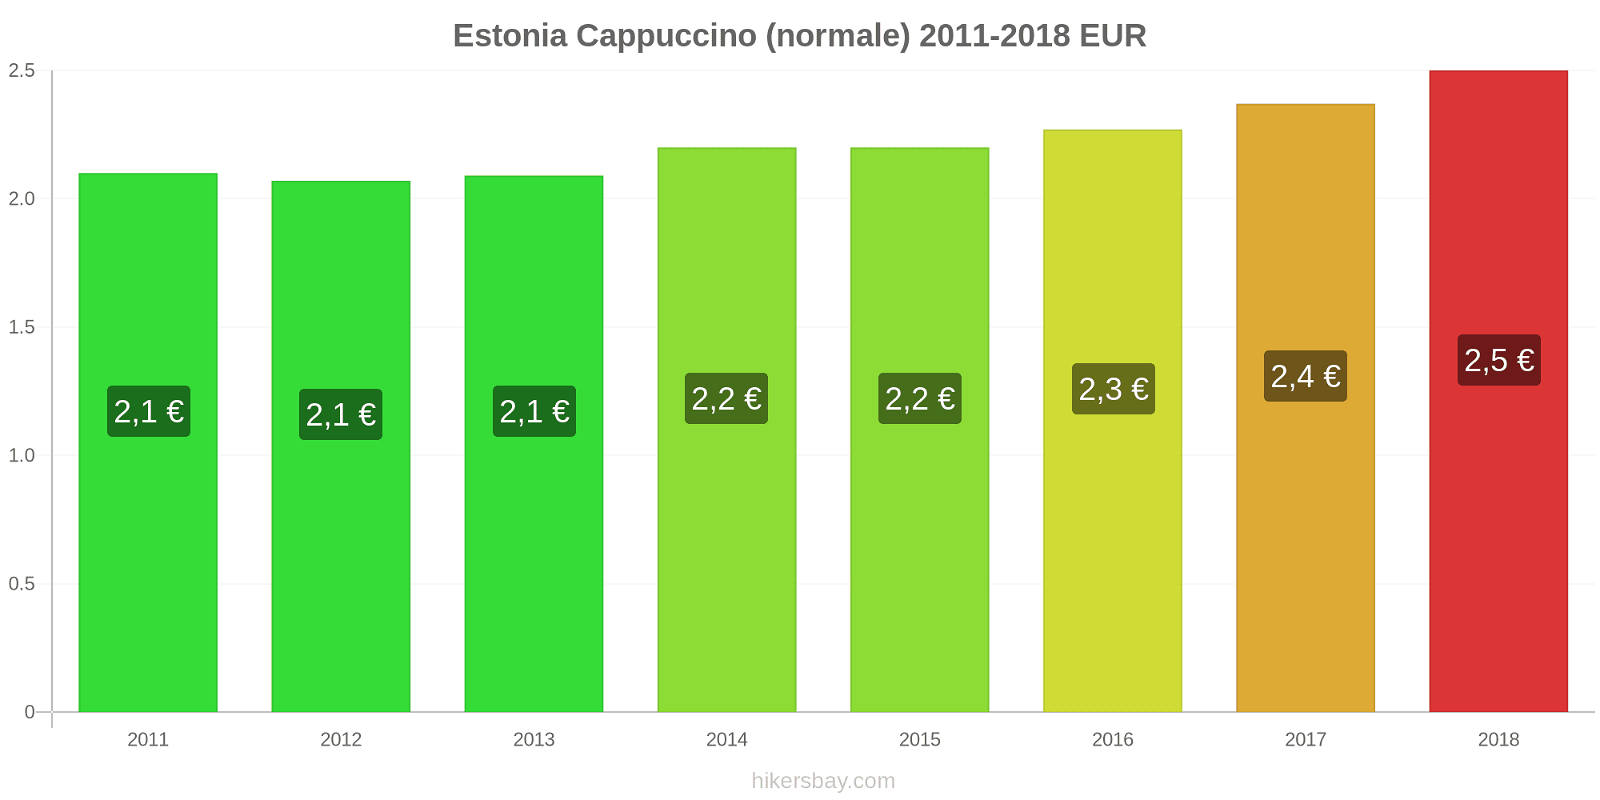 Estonia cambi di prezzo Cappuccino hikersbay.com